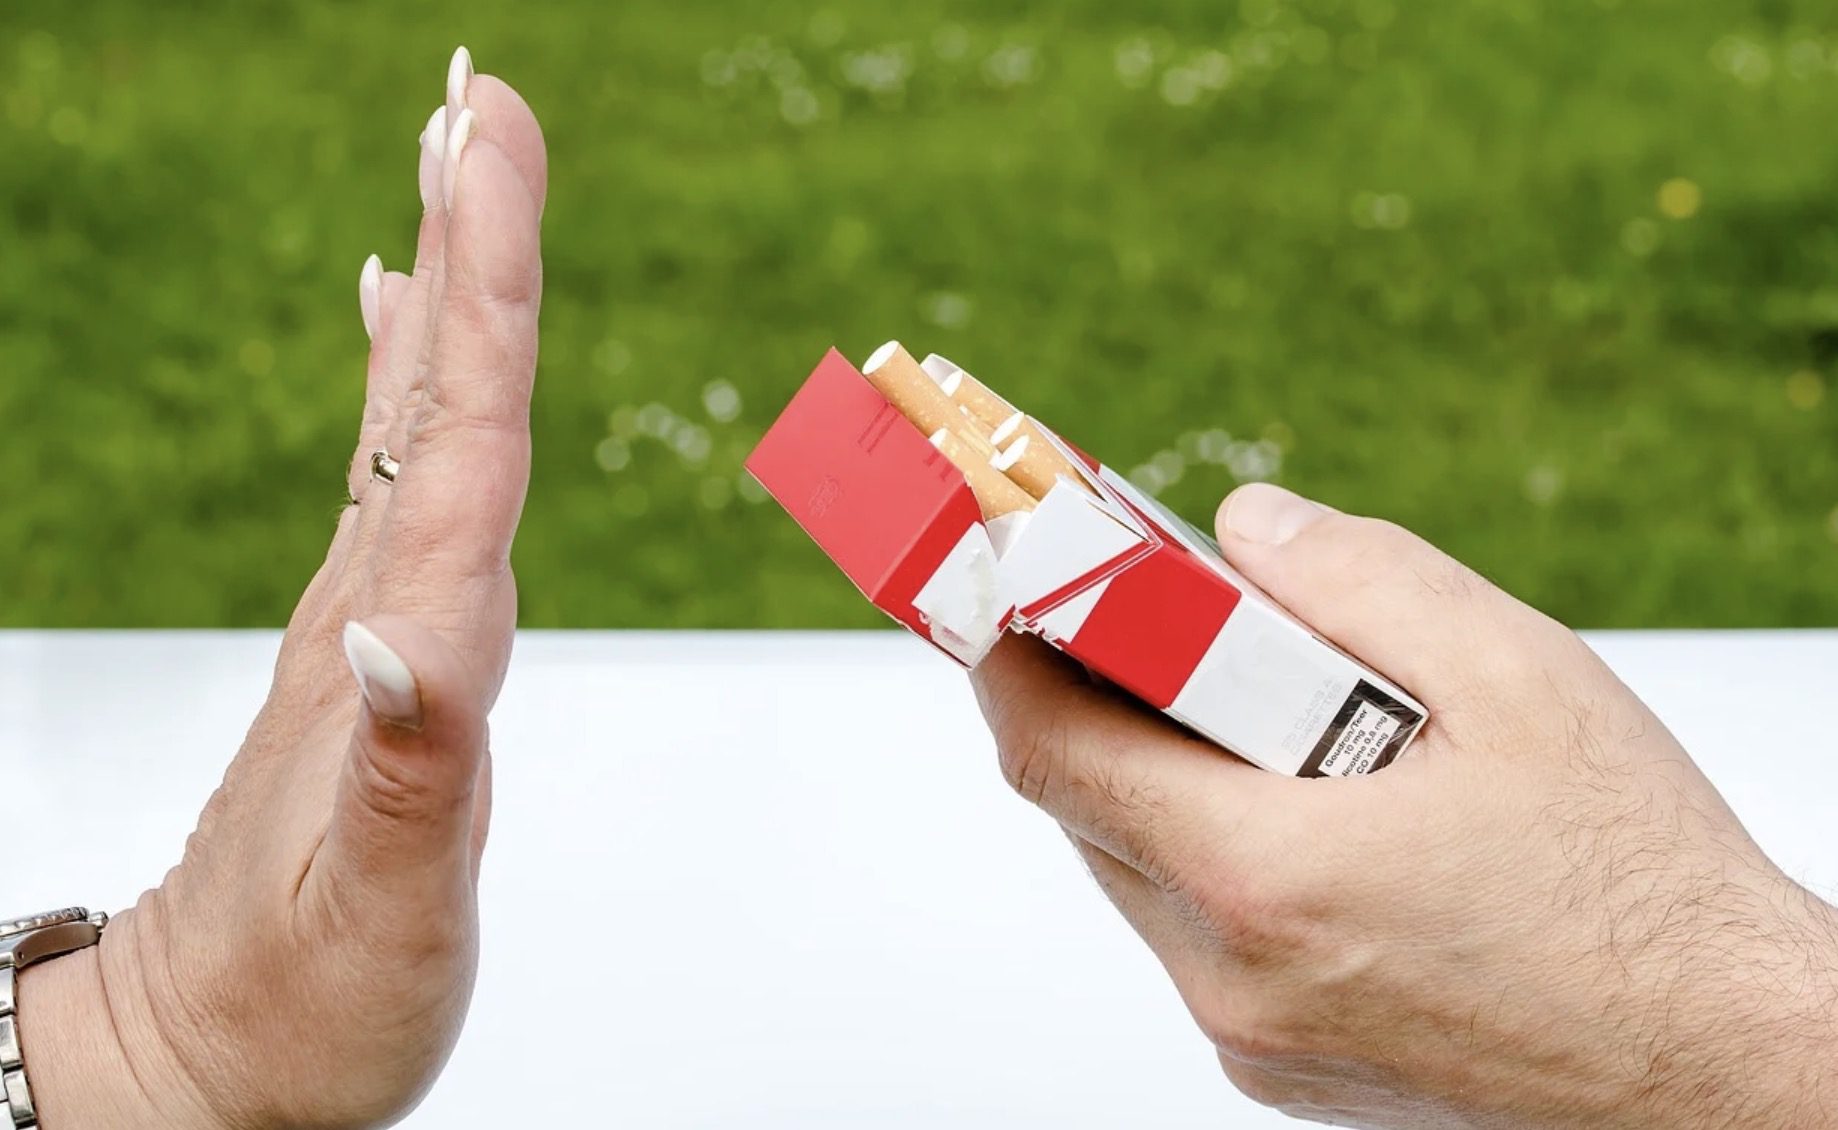 Le laser anti tabac : tout ce qu’il faut savoir sur cette méthode